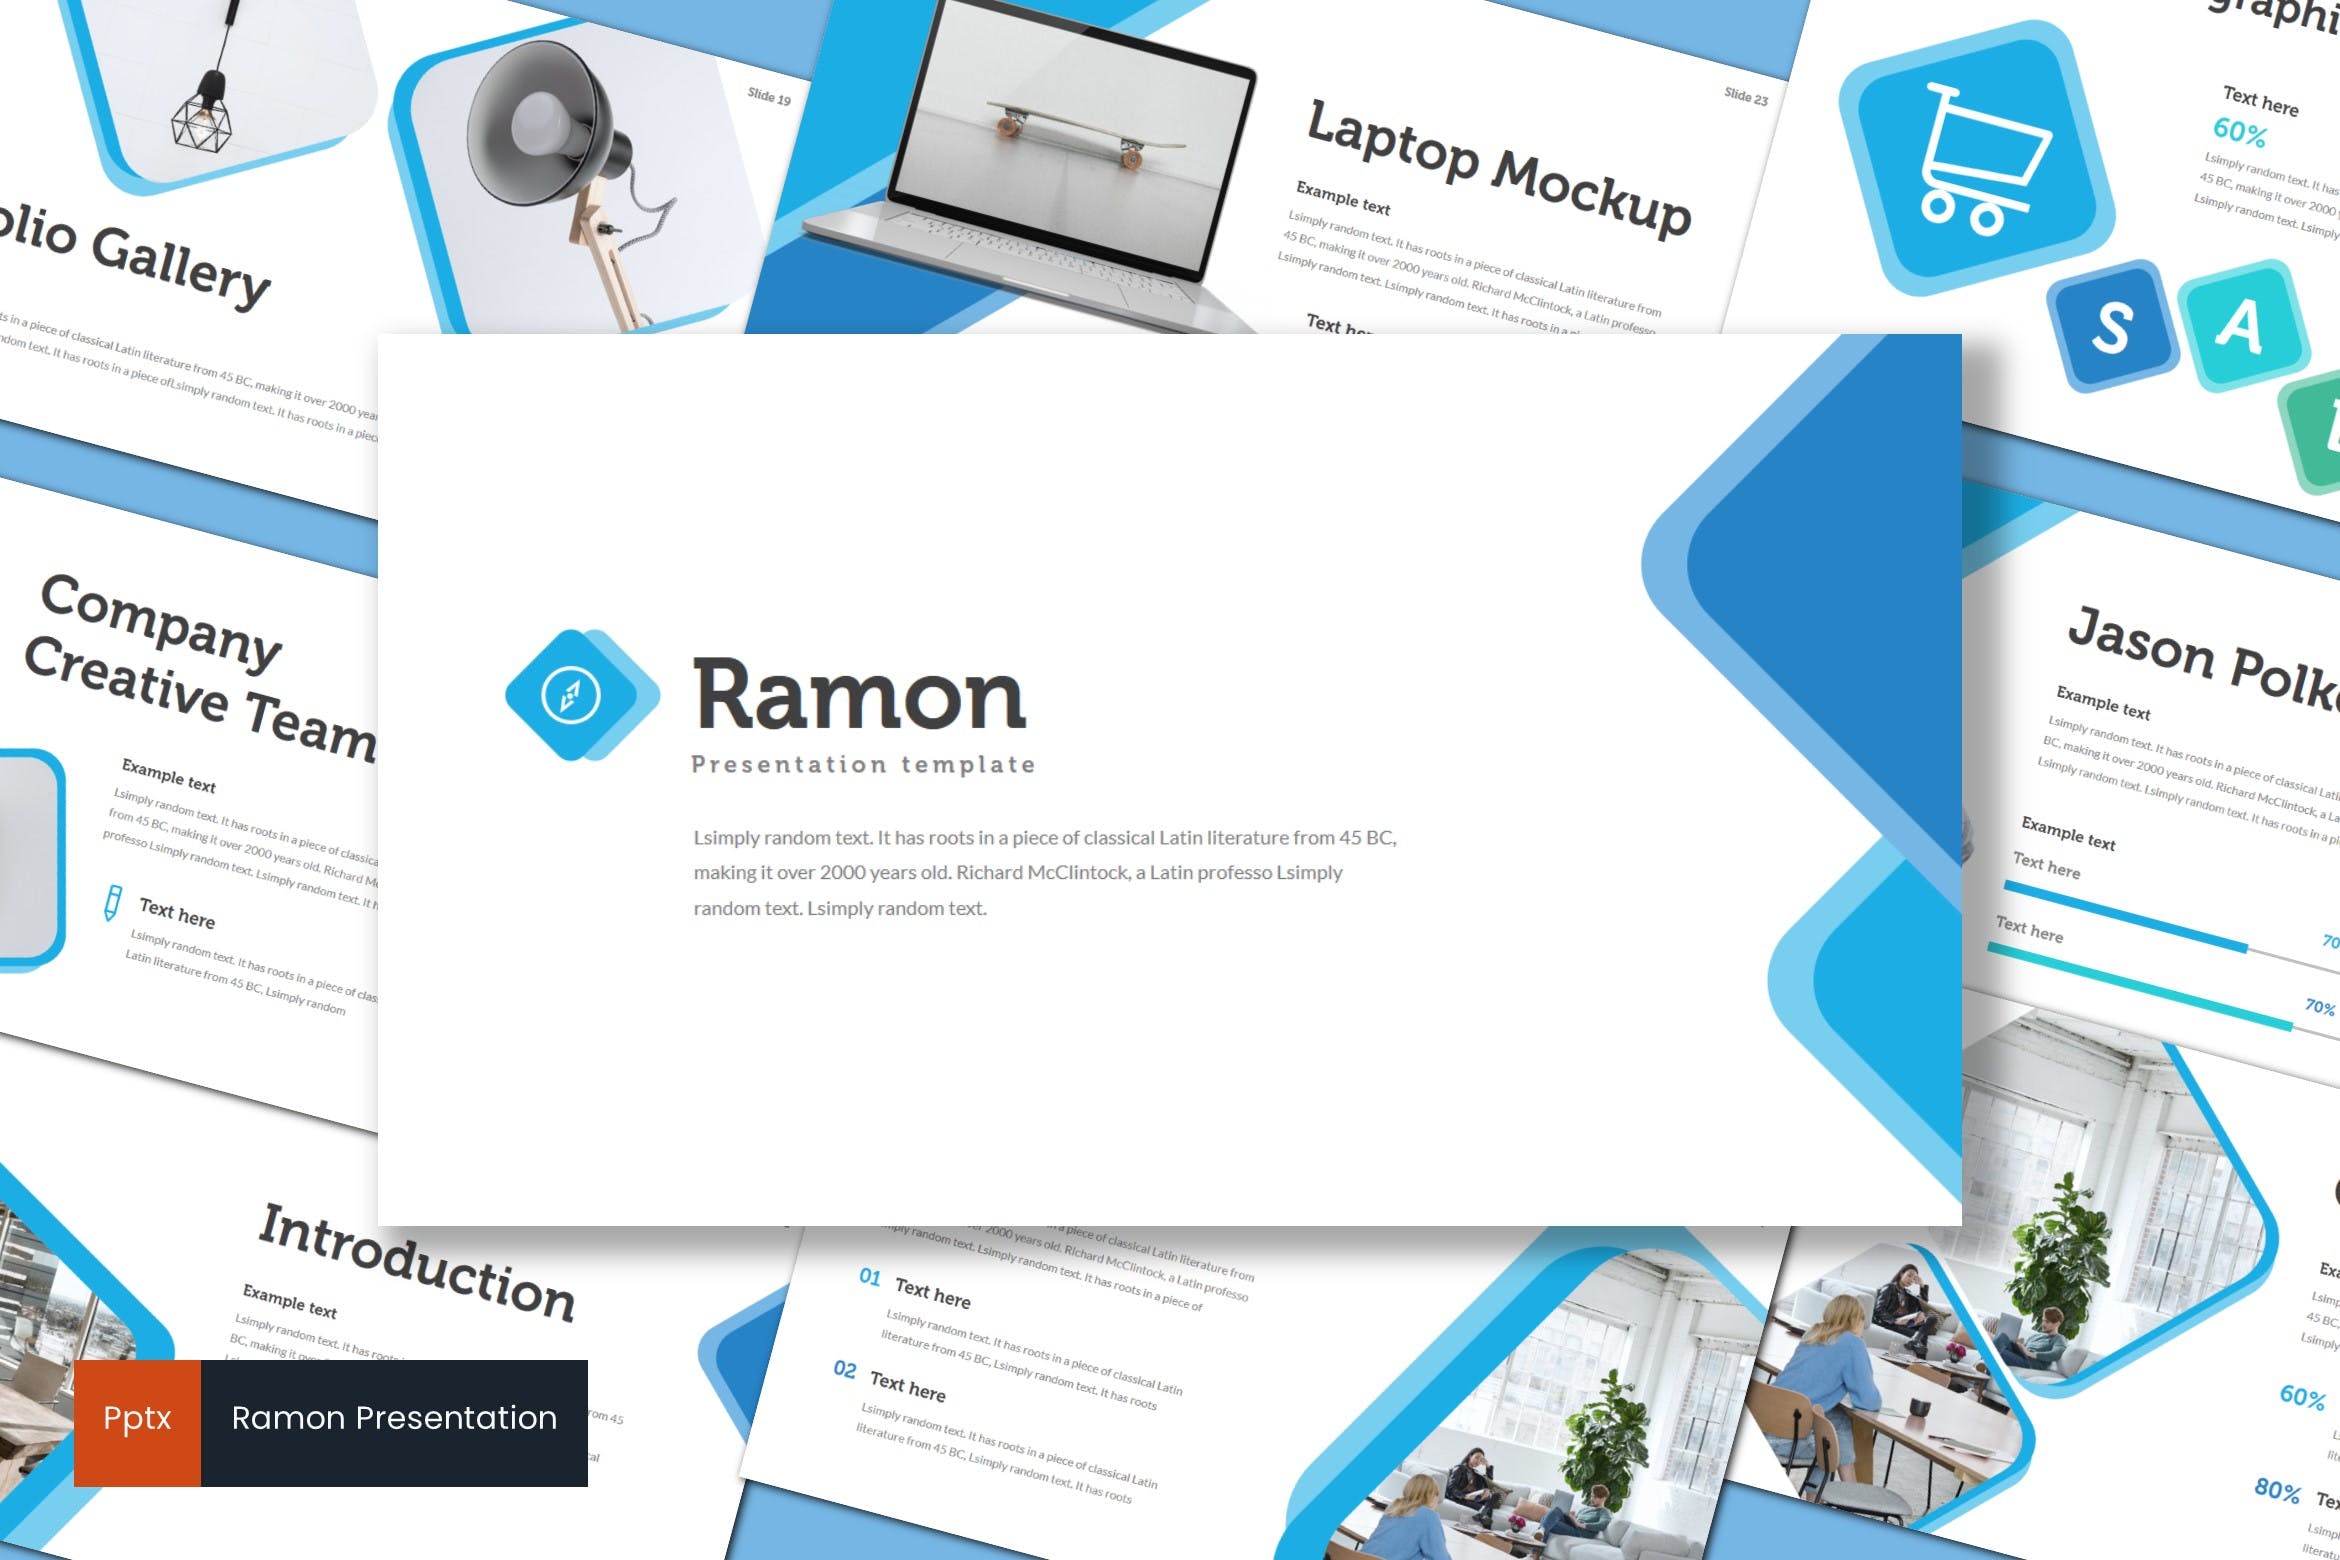 室内设计品牌宣传第一素材精选PPT模板 Ramon – Powerpoint Template插图